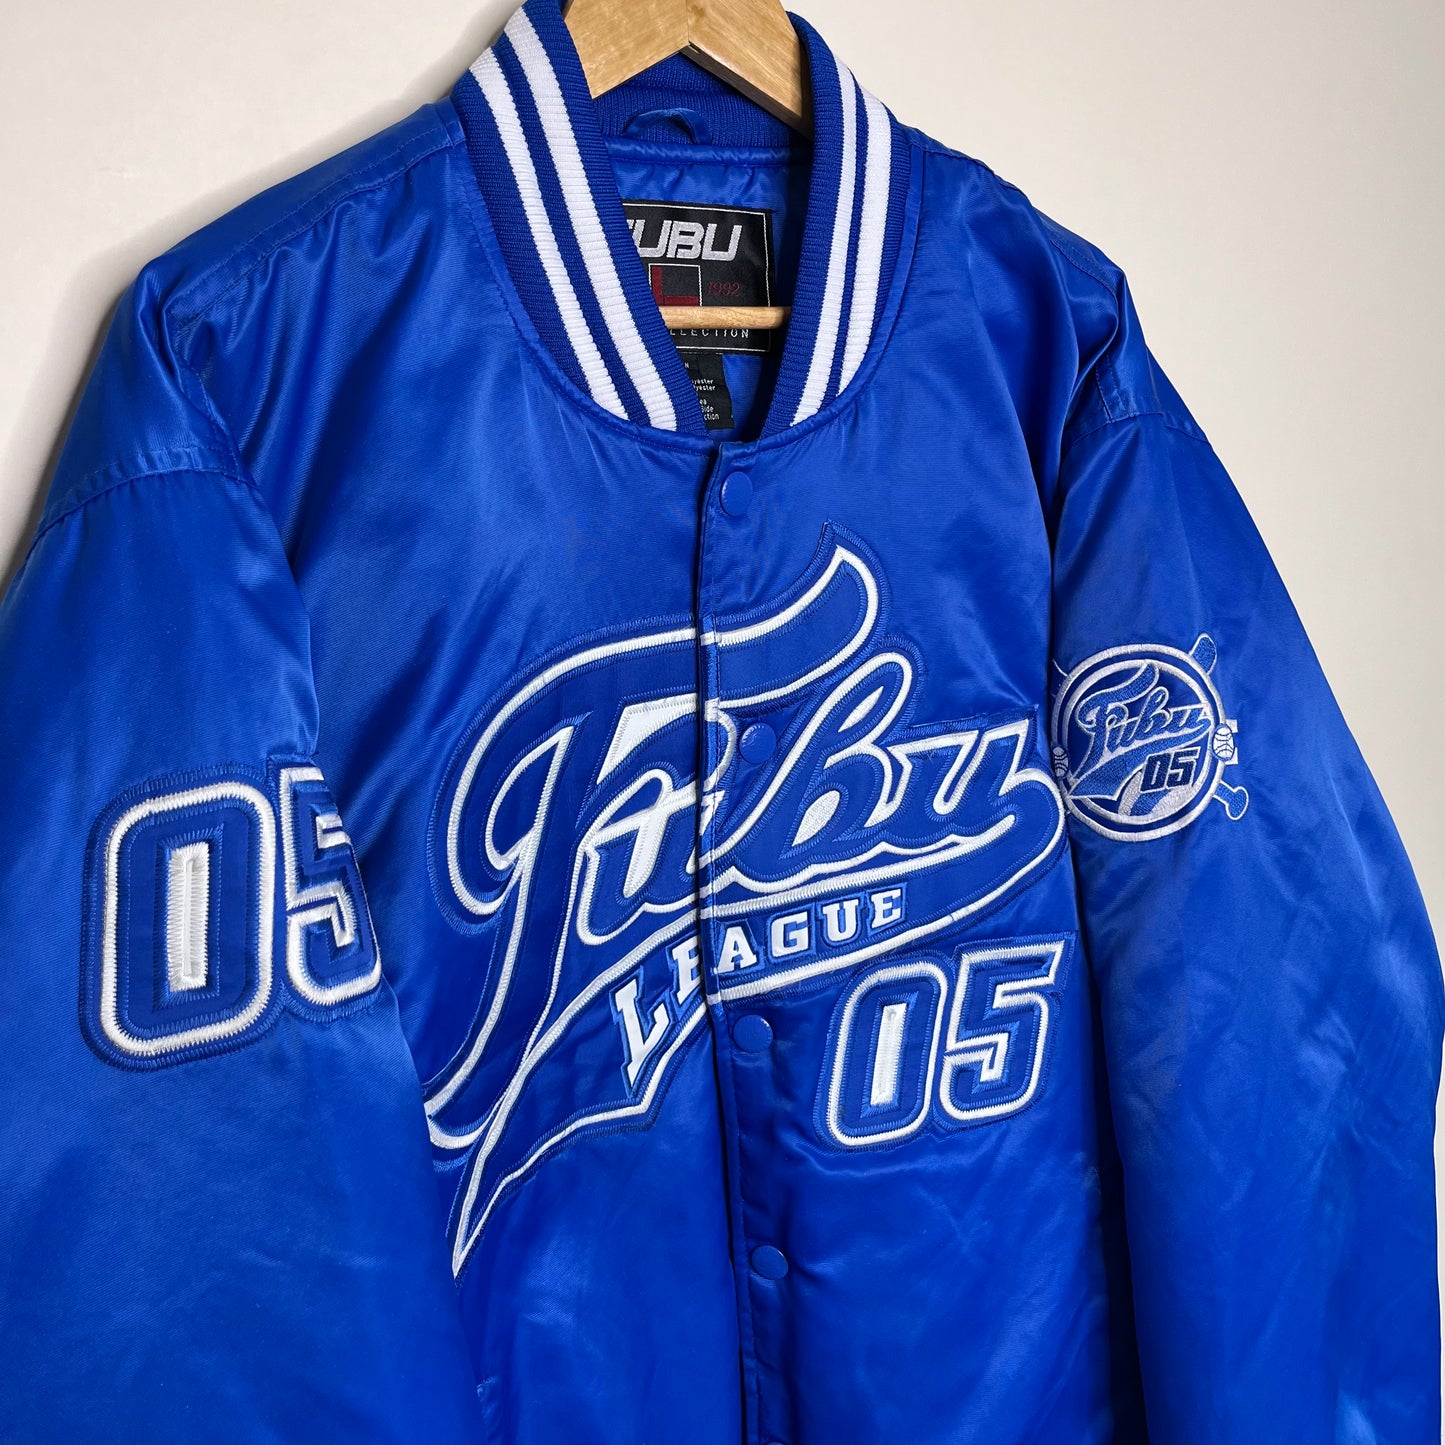 Vintage Blue Fubu Jacket